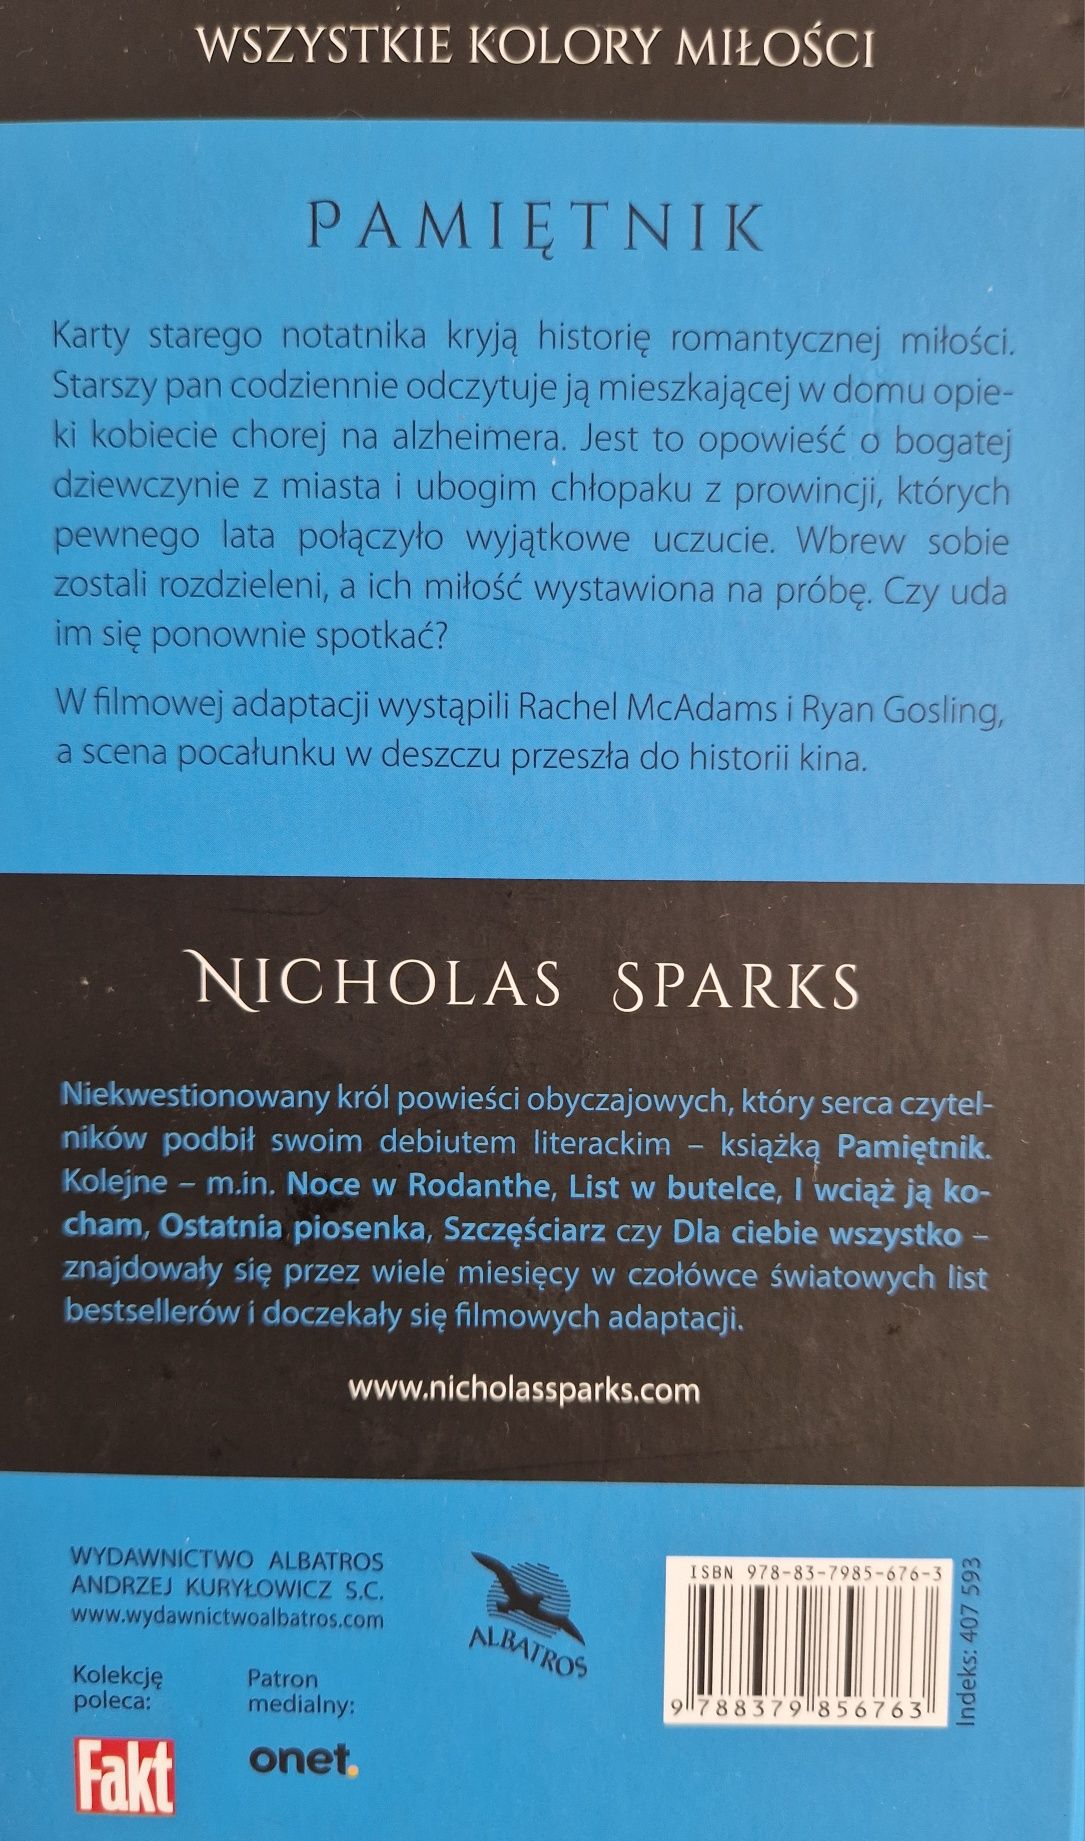 Pamiętnik Nicholas Sparks